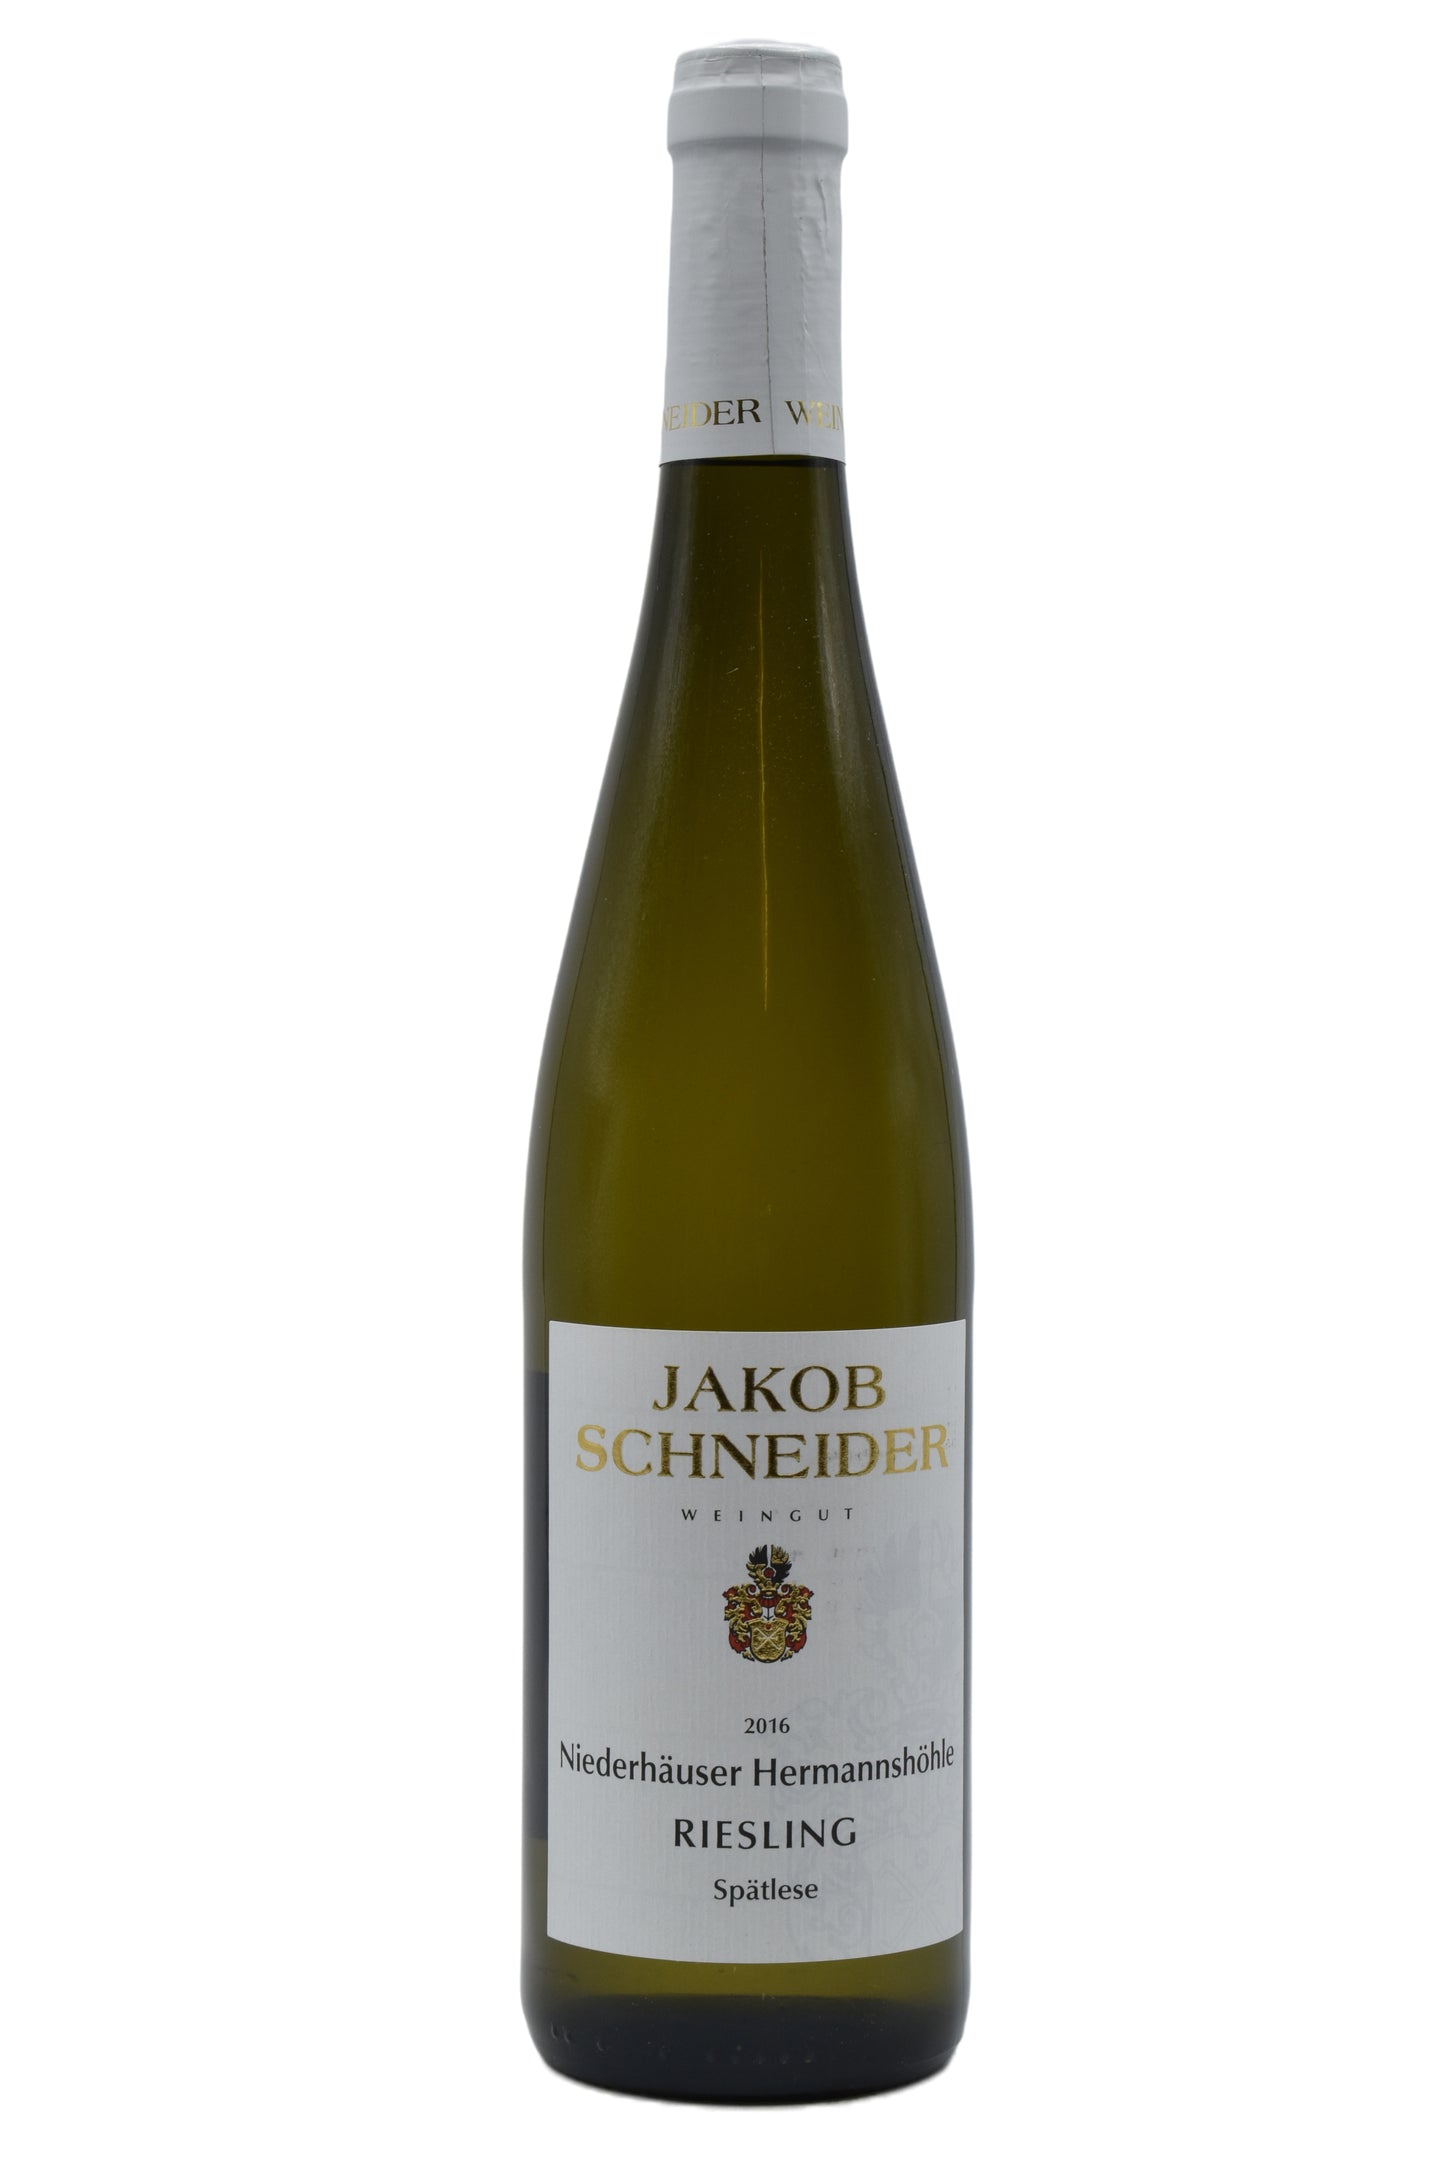 2016 Schneider, Niederhauser Hermannshohle Riesling, Spatlese 750ml - Walker Wine Co.